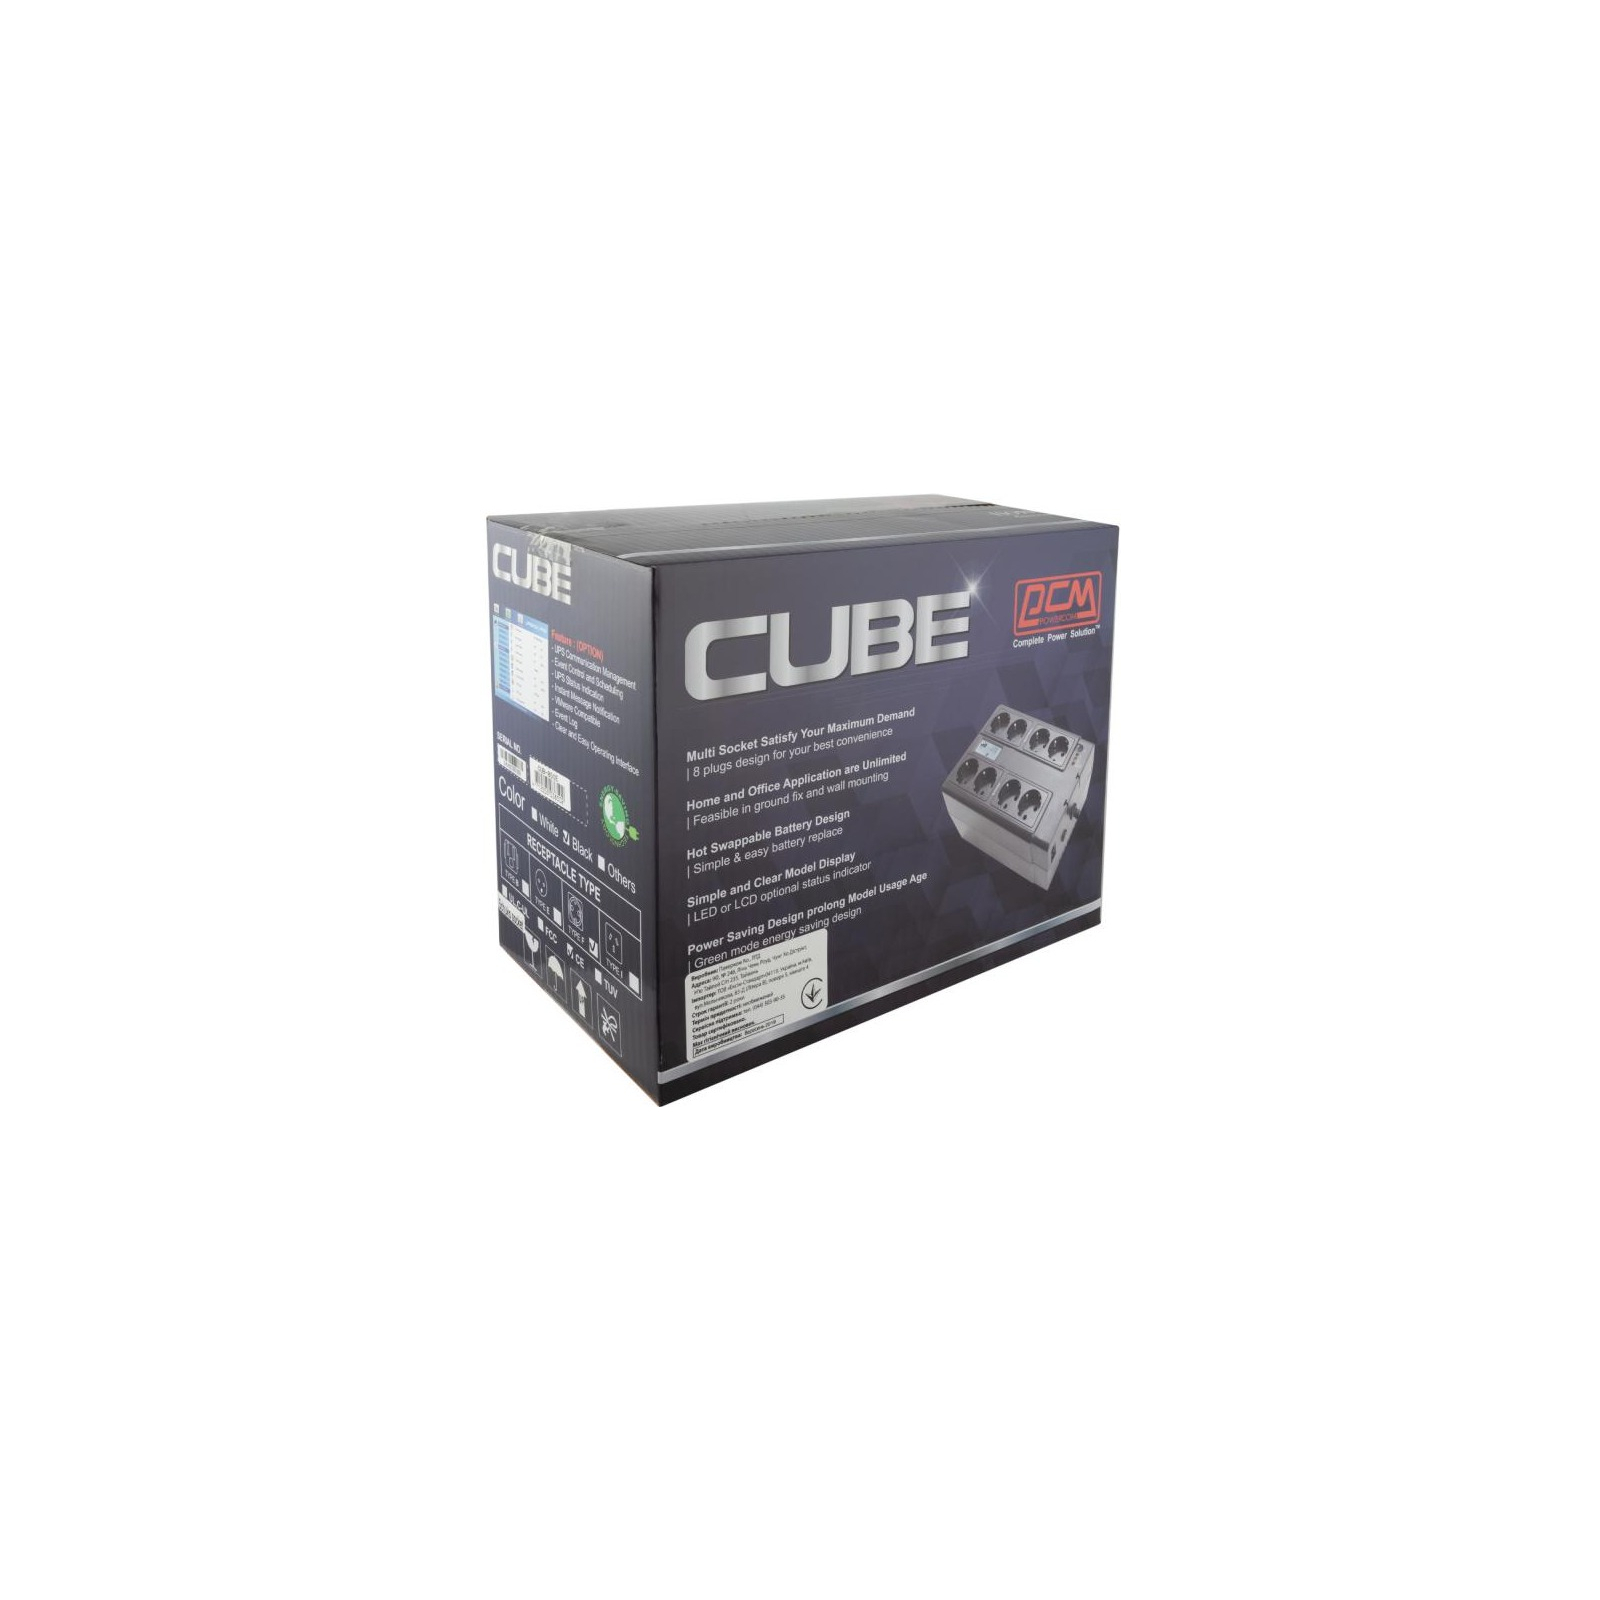 Источник бесперебойного питания Powercom CUB-850E USB (CUB.850E.USB) изображение 7